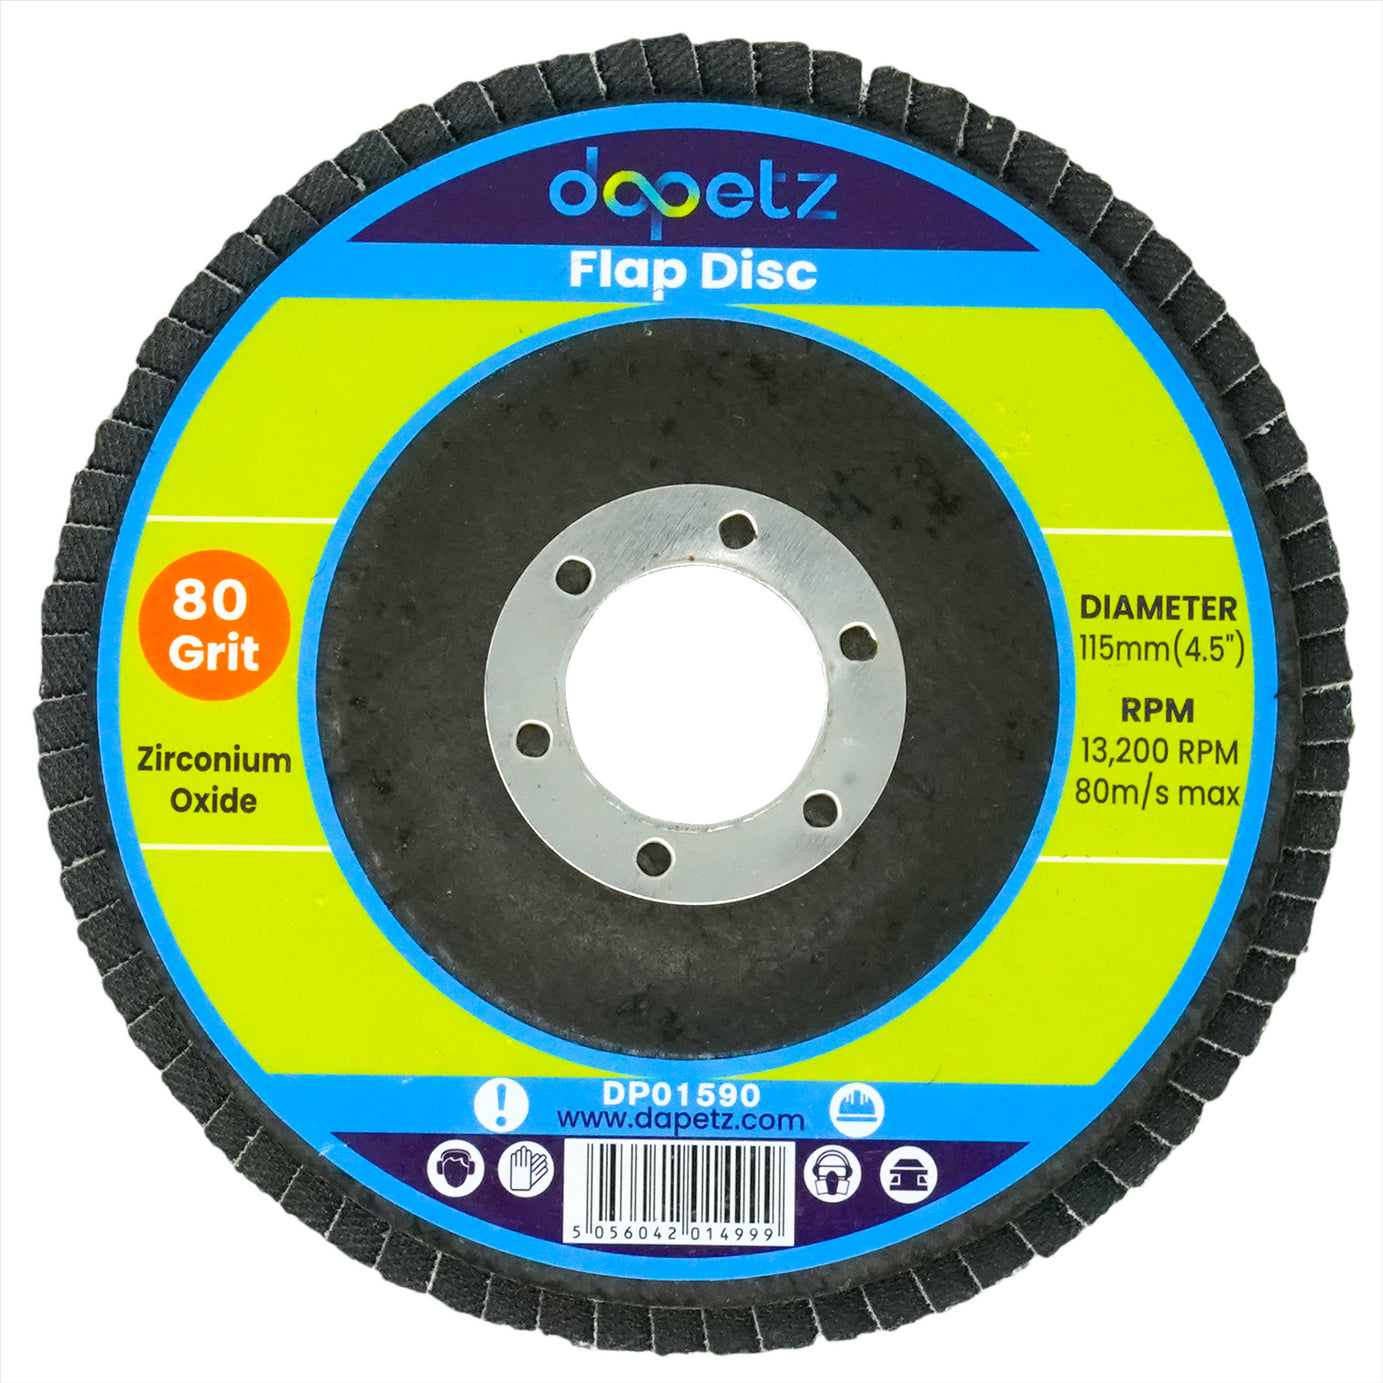  10x Flap Grinding Sanding Discs